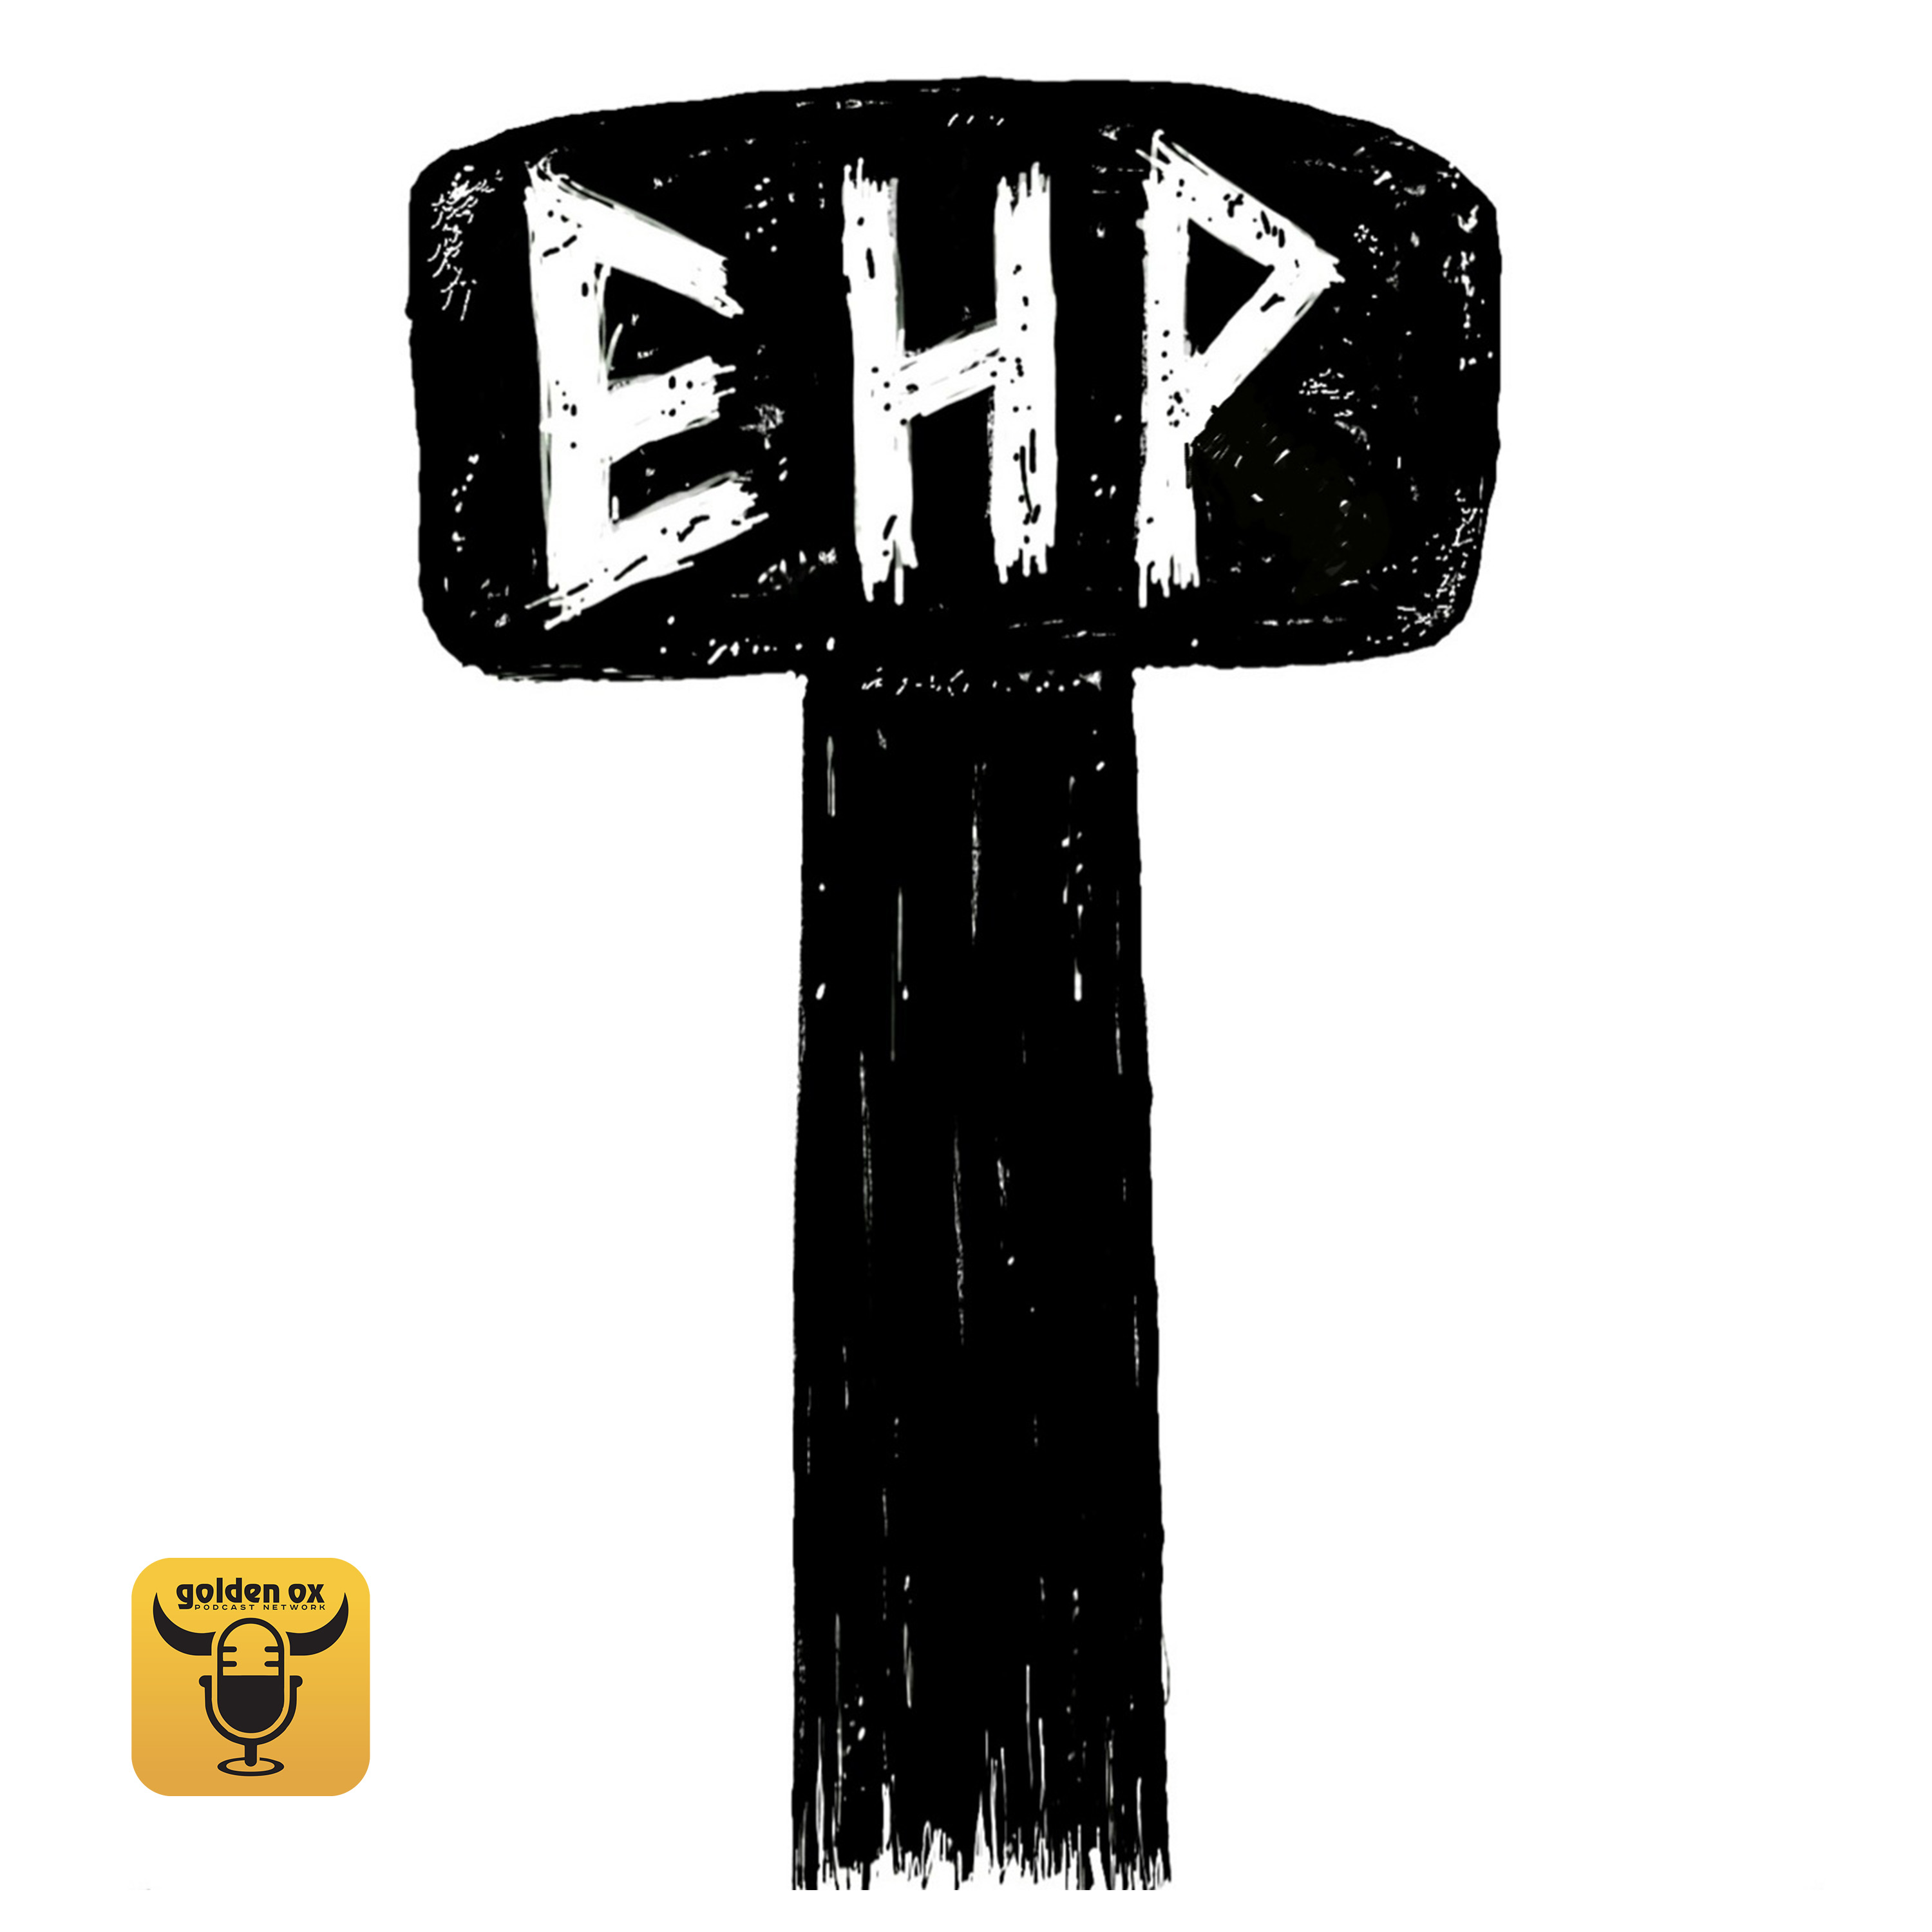 Ear Hammer Podcast's artwork